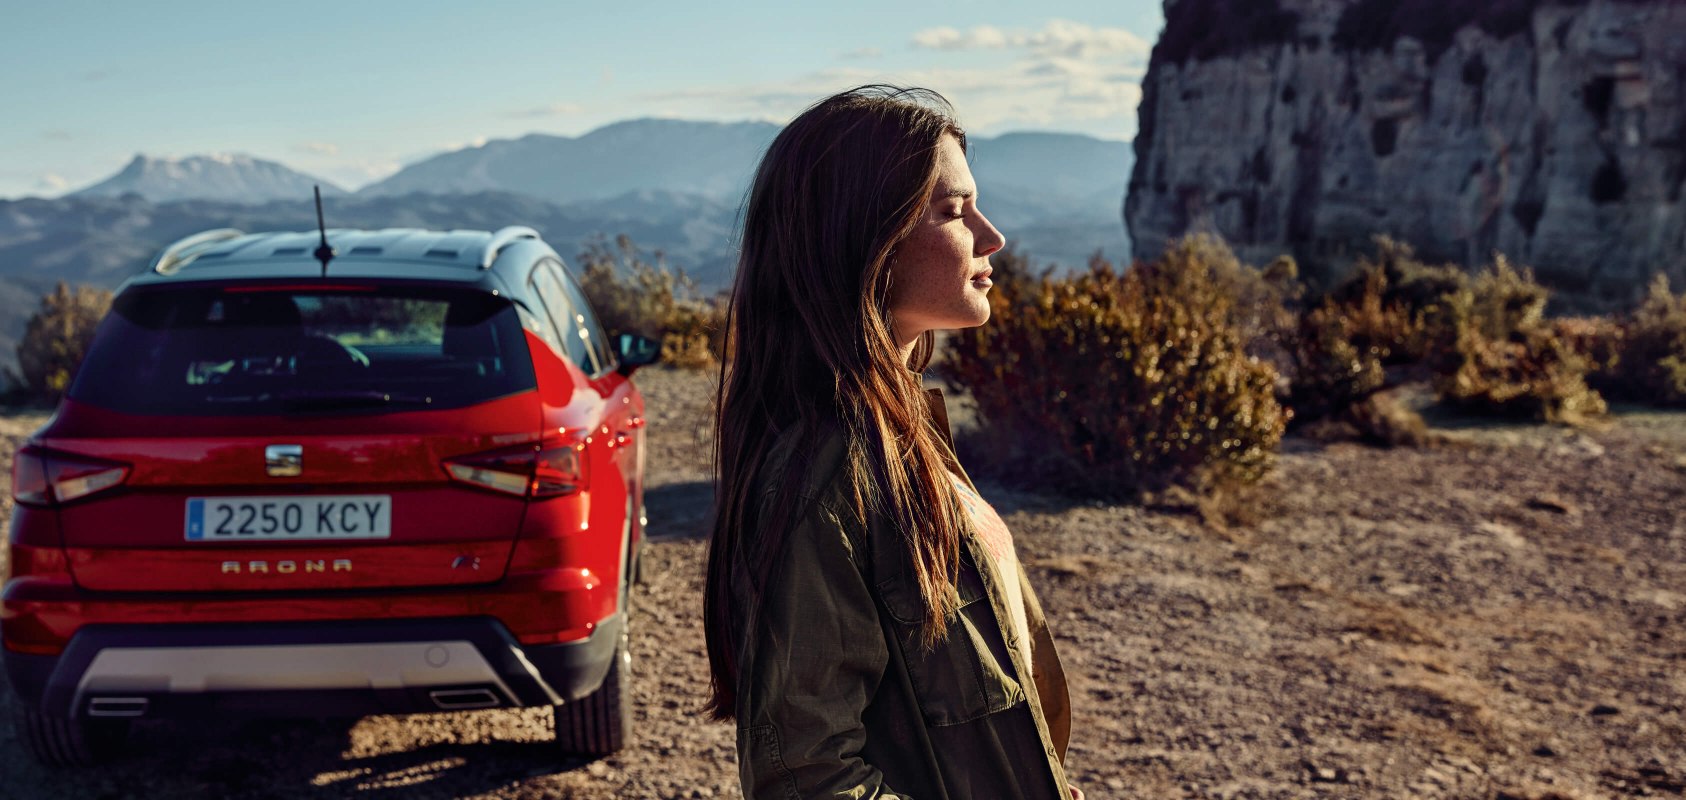 SEAT servizi auto nuove – vista posteriore di un SUV SEAT Arona crossover parcheggiato in un deserto con la vista di profilo di una donna